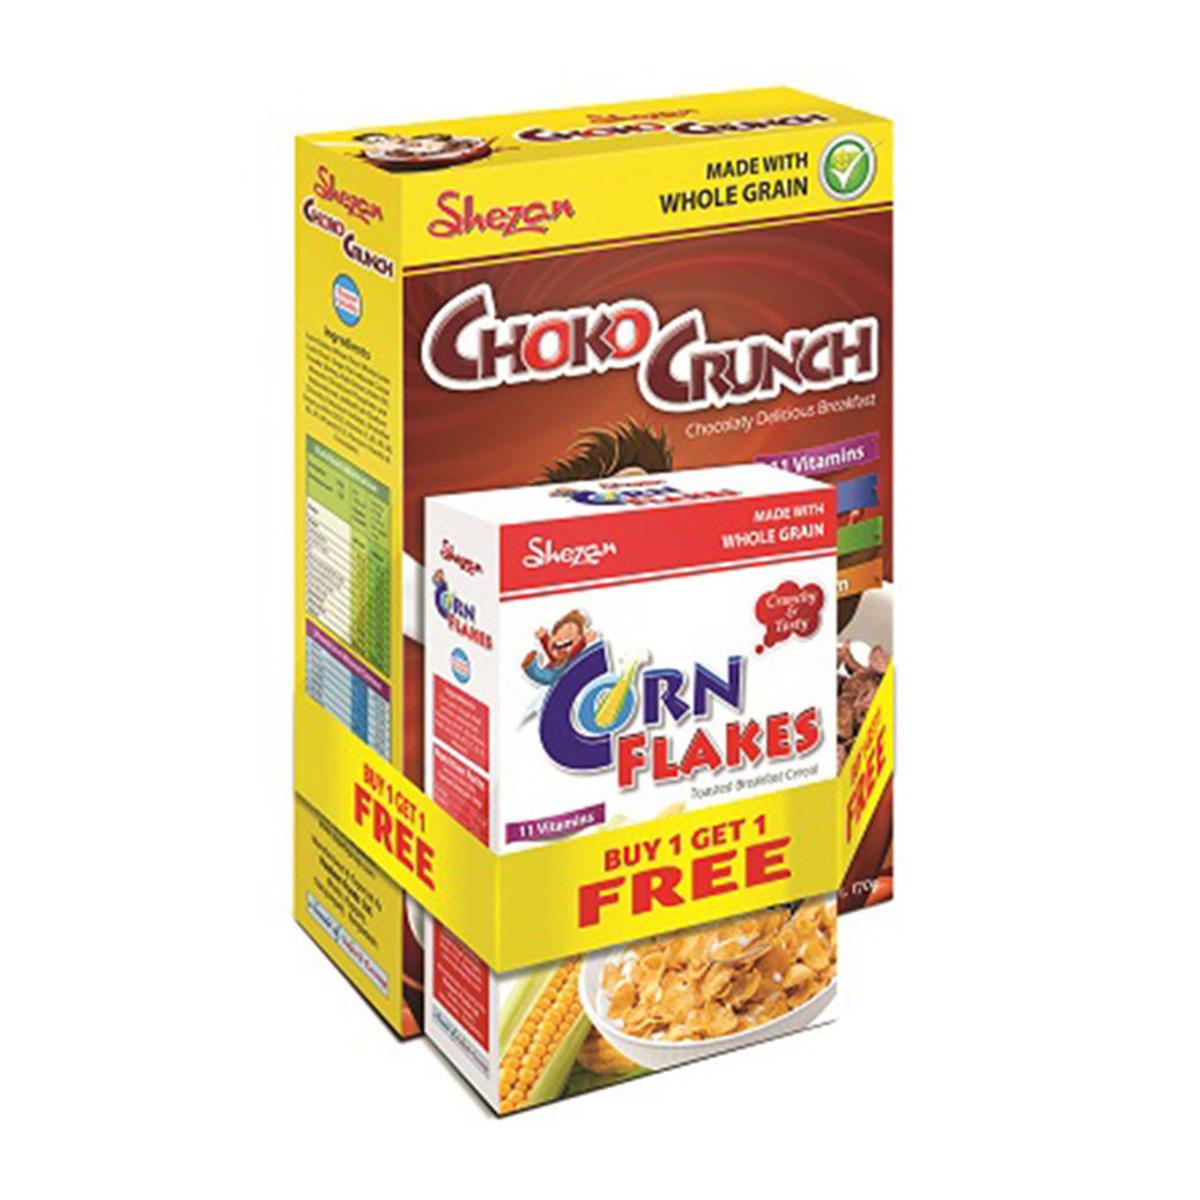 Shezan Choko Crunch 330 gm Buy 1 Get 1 Shezan Corn Flakes - 150gm Free